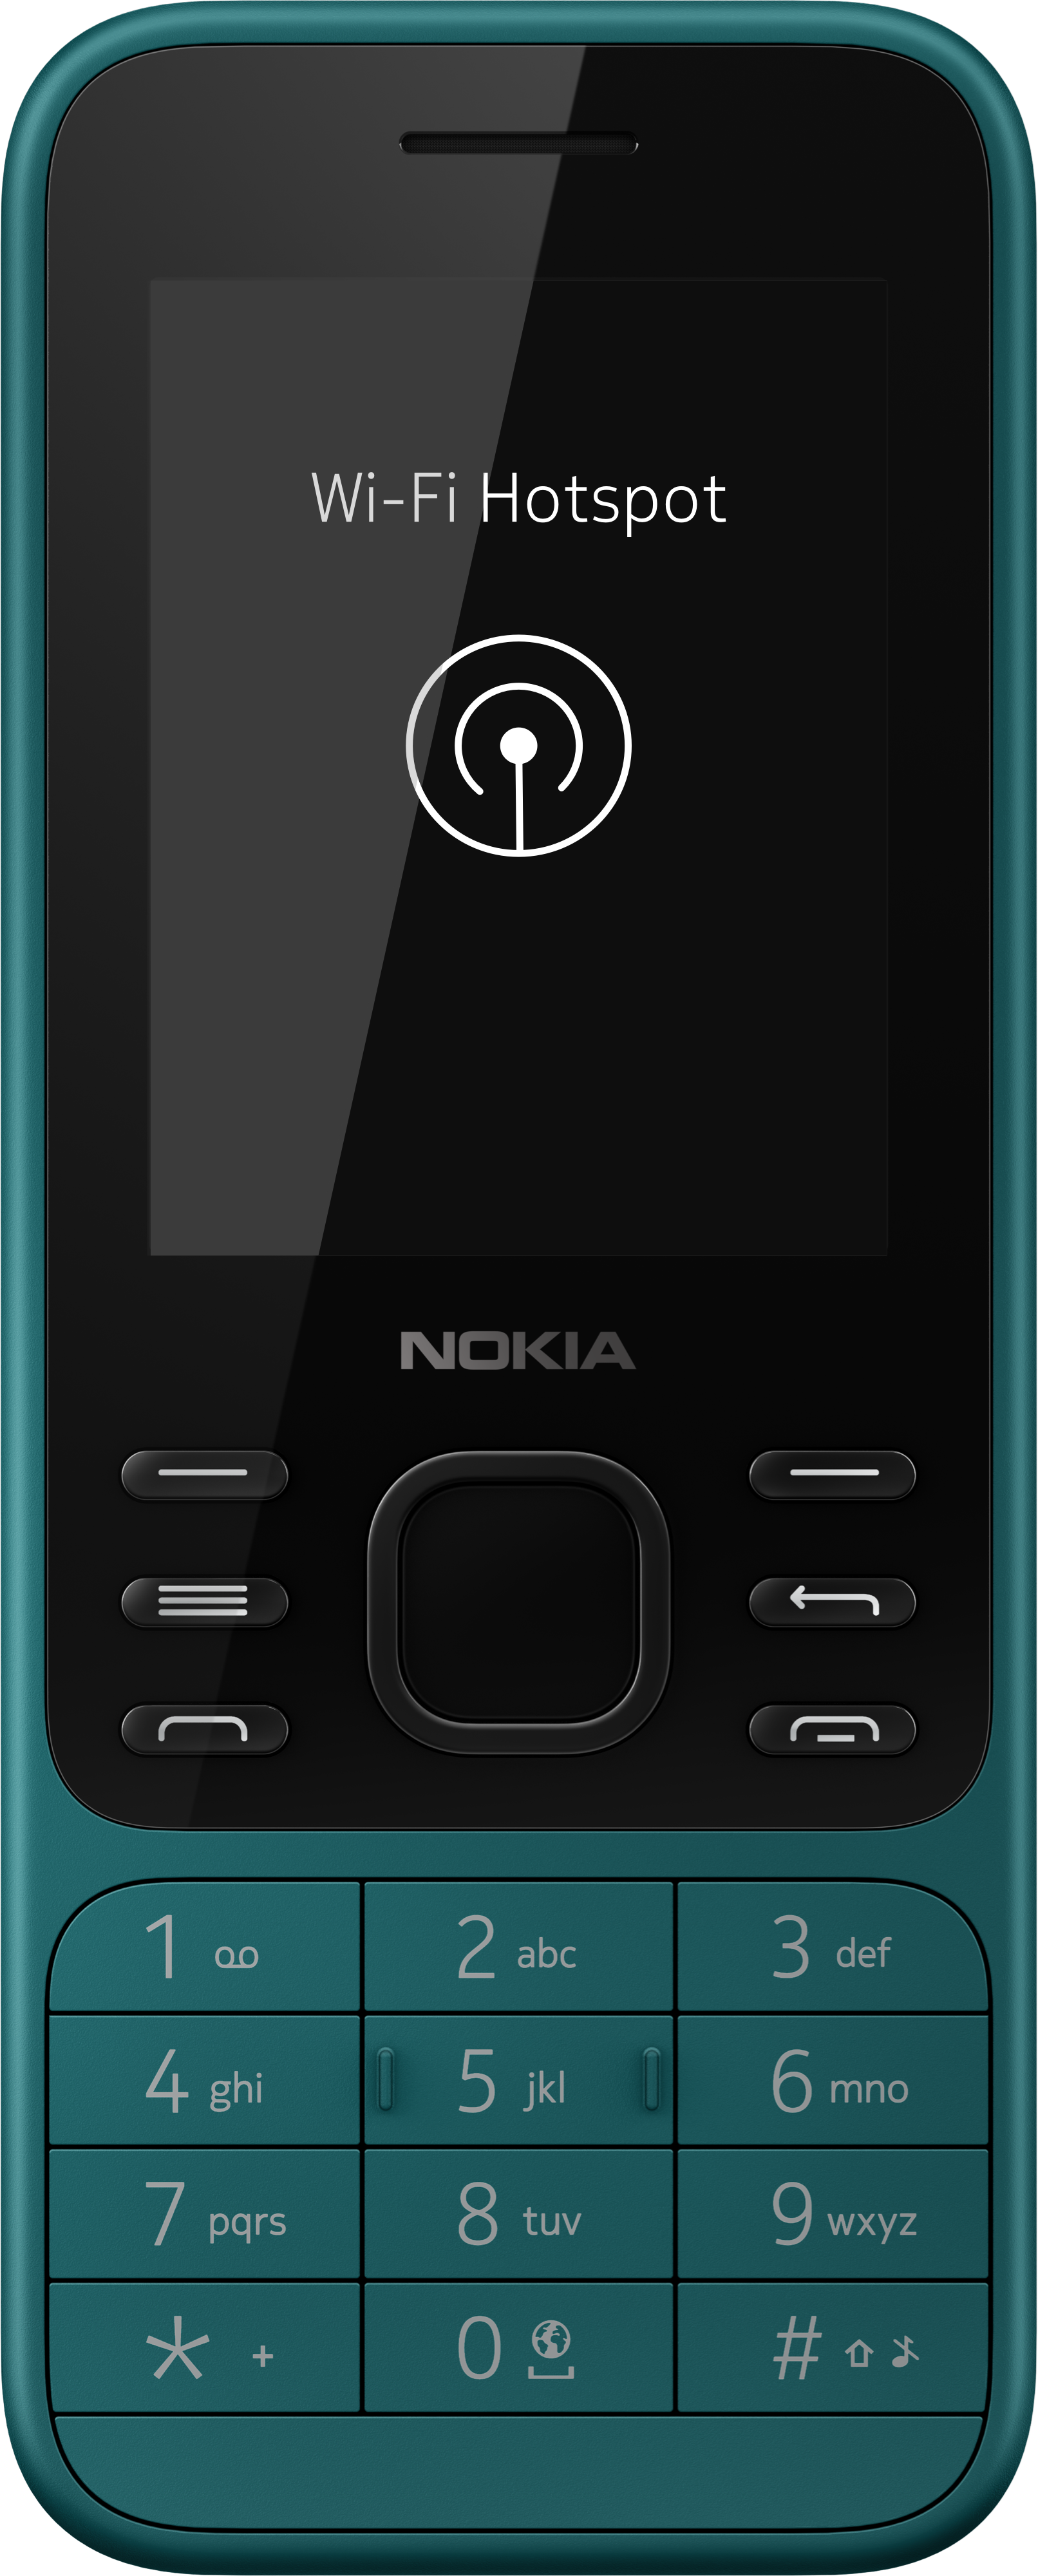 Nokia 6300 4G, Desbloqueado, Dual SIM, Hotspot WiFi, Aplicaciones  sociales, Google Maps y Asistente